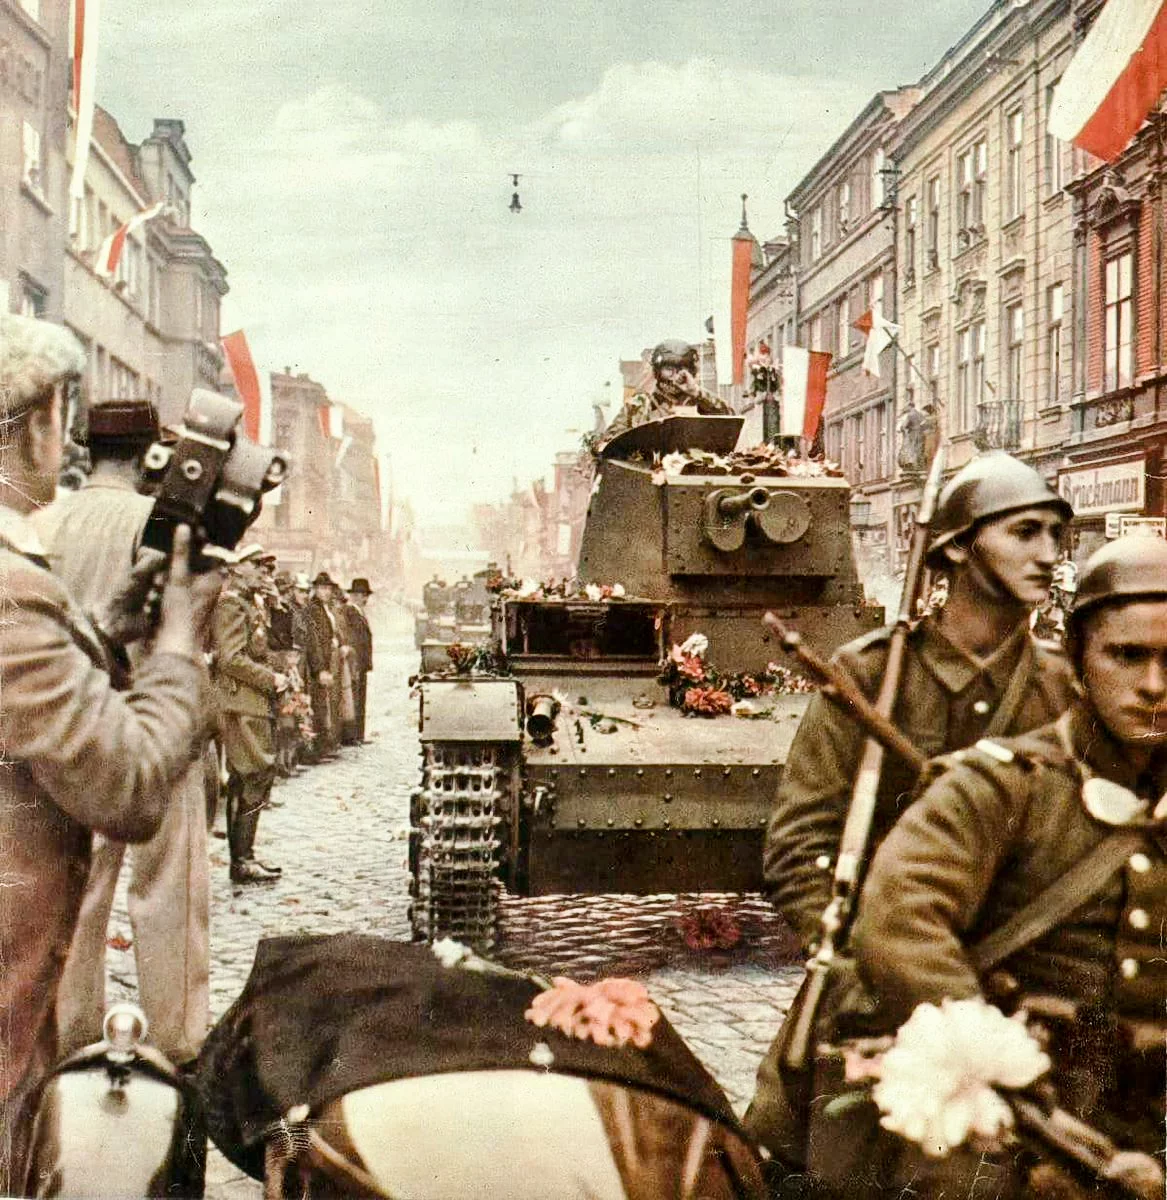 Чехословакия после второй мировой. Польские войска в Чехословакии 1938. Оккупация Польши 1939. Польская армия 1939 во второй мировой войне. Польша и Германия в оккупированной Чехословакии 1938.